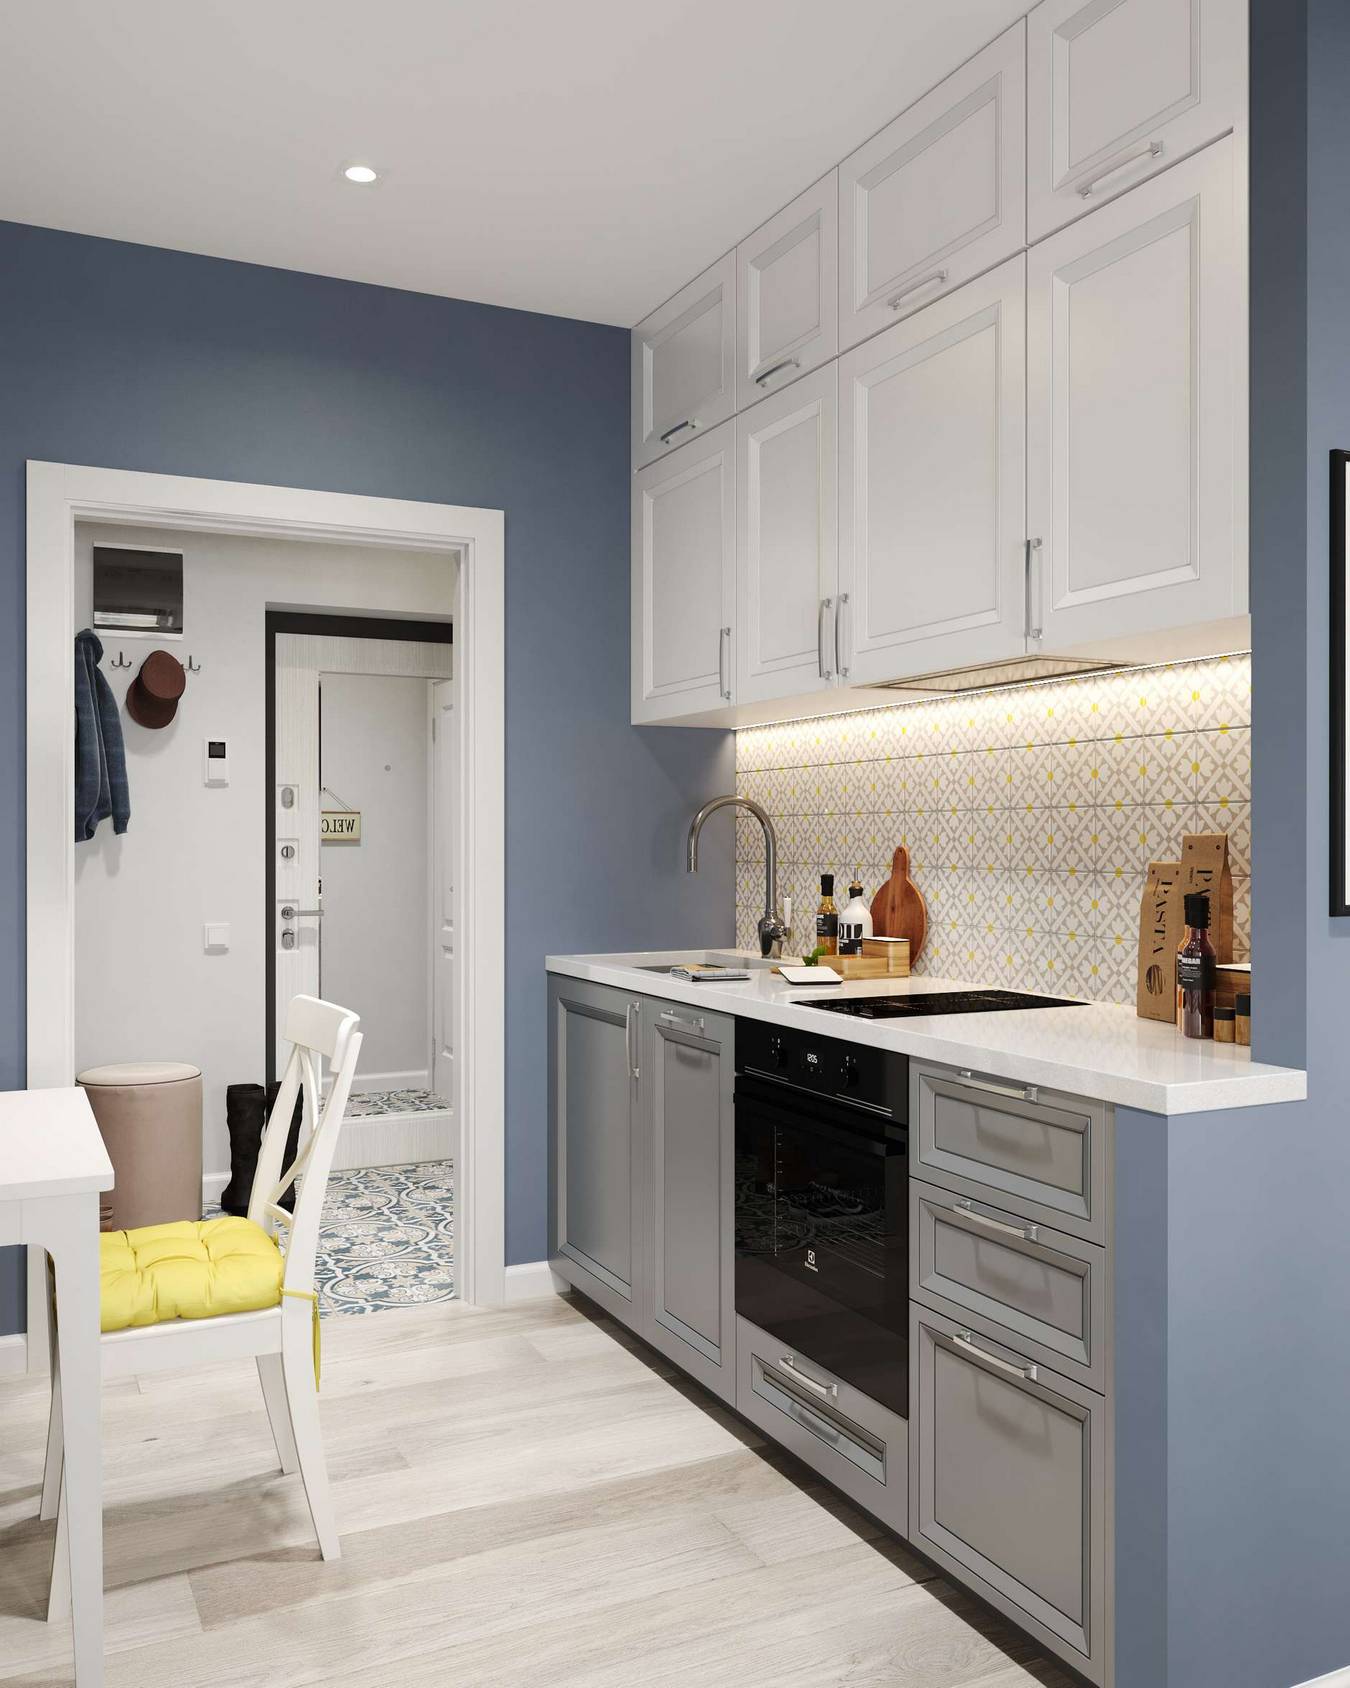 Phòng bếp được thiết kế theo kiểu chữ I, giải pháp hoàn hảo cho không gian căn hộ vừa và nhỏ. Hệ thống đèn gầm bên dưới tủ bếp trên cung cấp tối đa ánh sáng cho nơi nấu nướng.